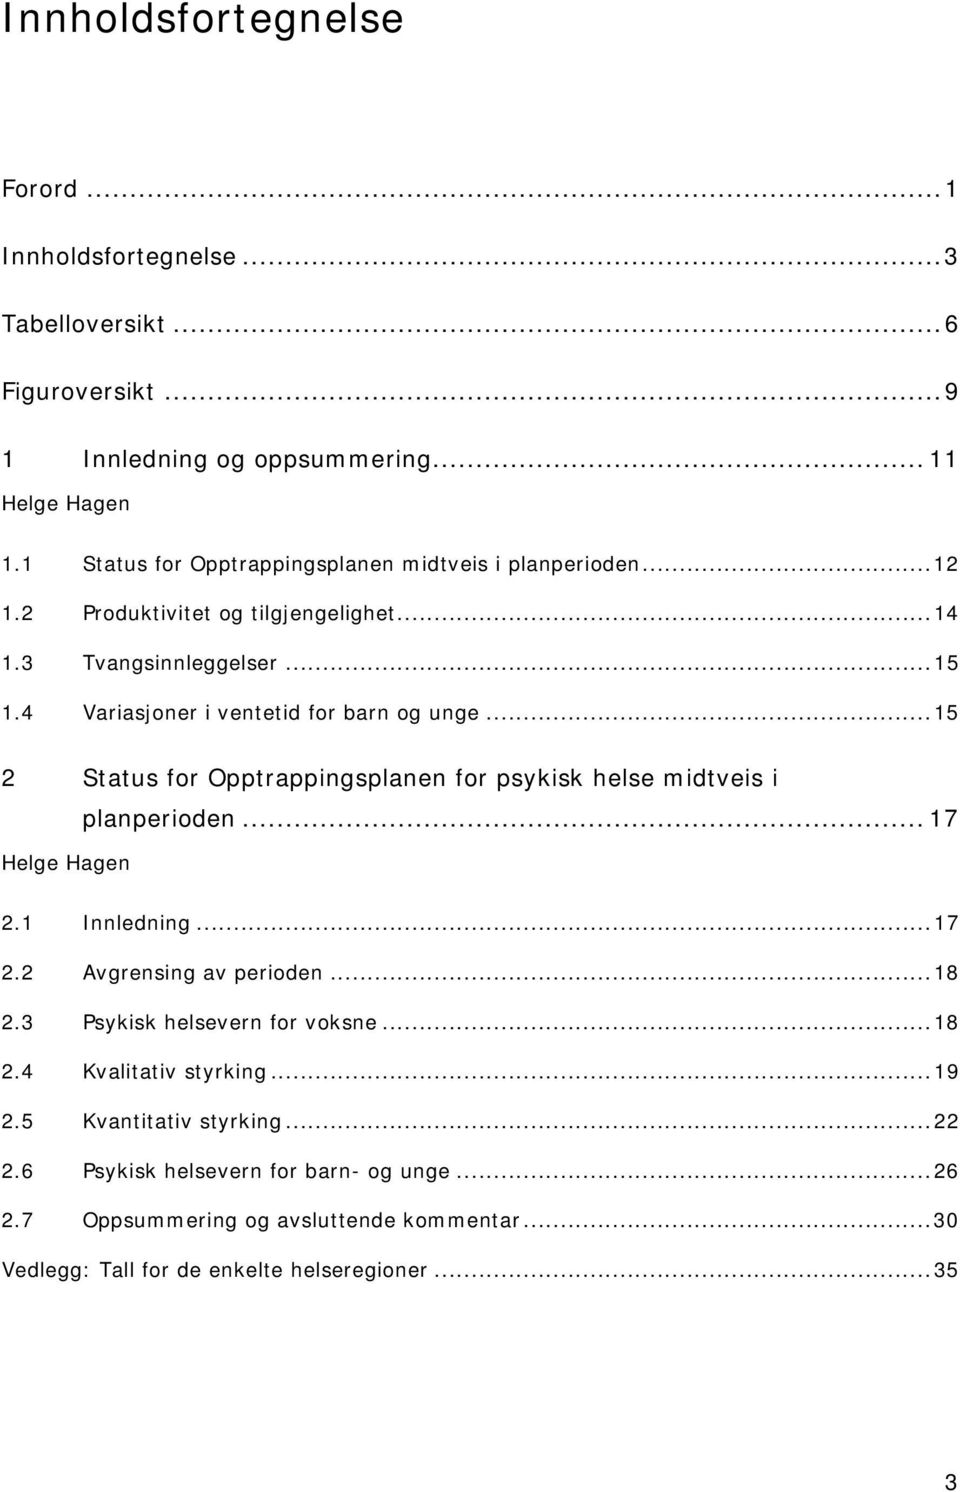 ..15 2 Status for Opptrappingsplanen for psykisk helse midtveis i Helge Hagen planperioden... 17 2.1 Innledning...17 2.2 Avgrensing av perioden...18 2.